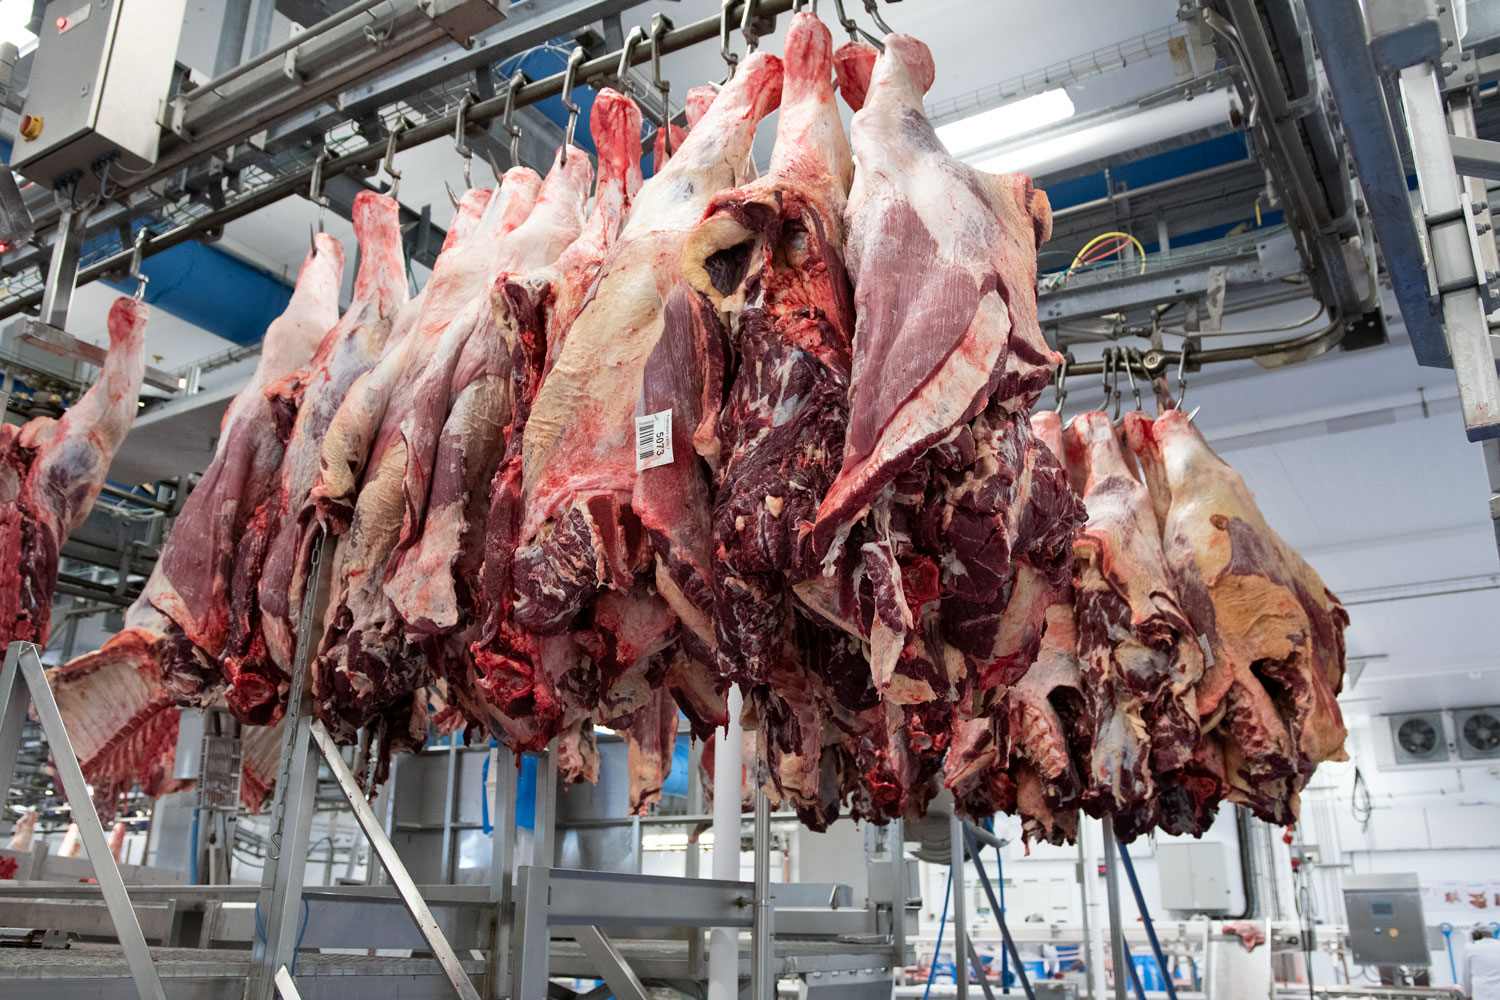 Kjøttet henger tett i tett og venter på å bli skåret av kjøttskjærerne. Foto: Henriette Louise Krogness